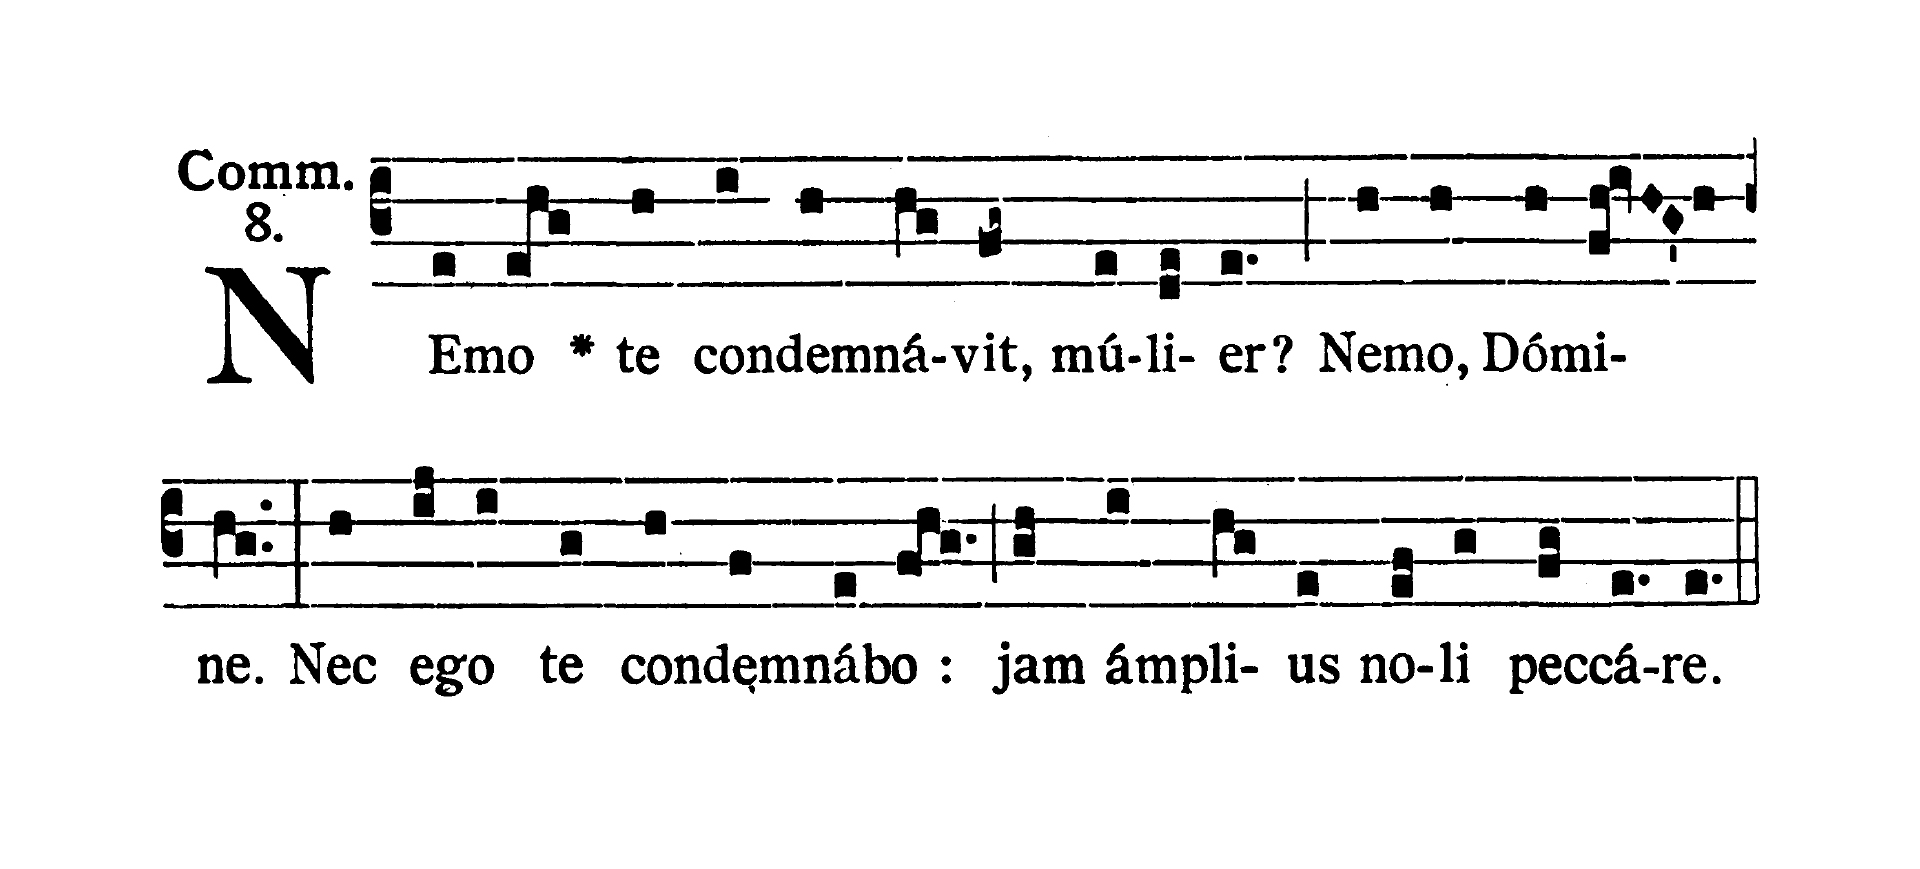 Sabbato post Dominicam III Quadragesimae - Communio (Nemo te condemnavit)